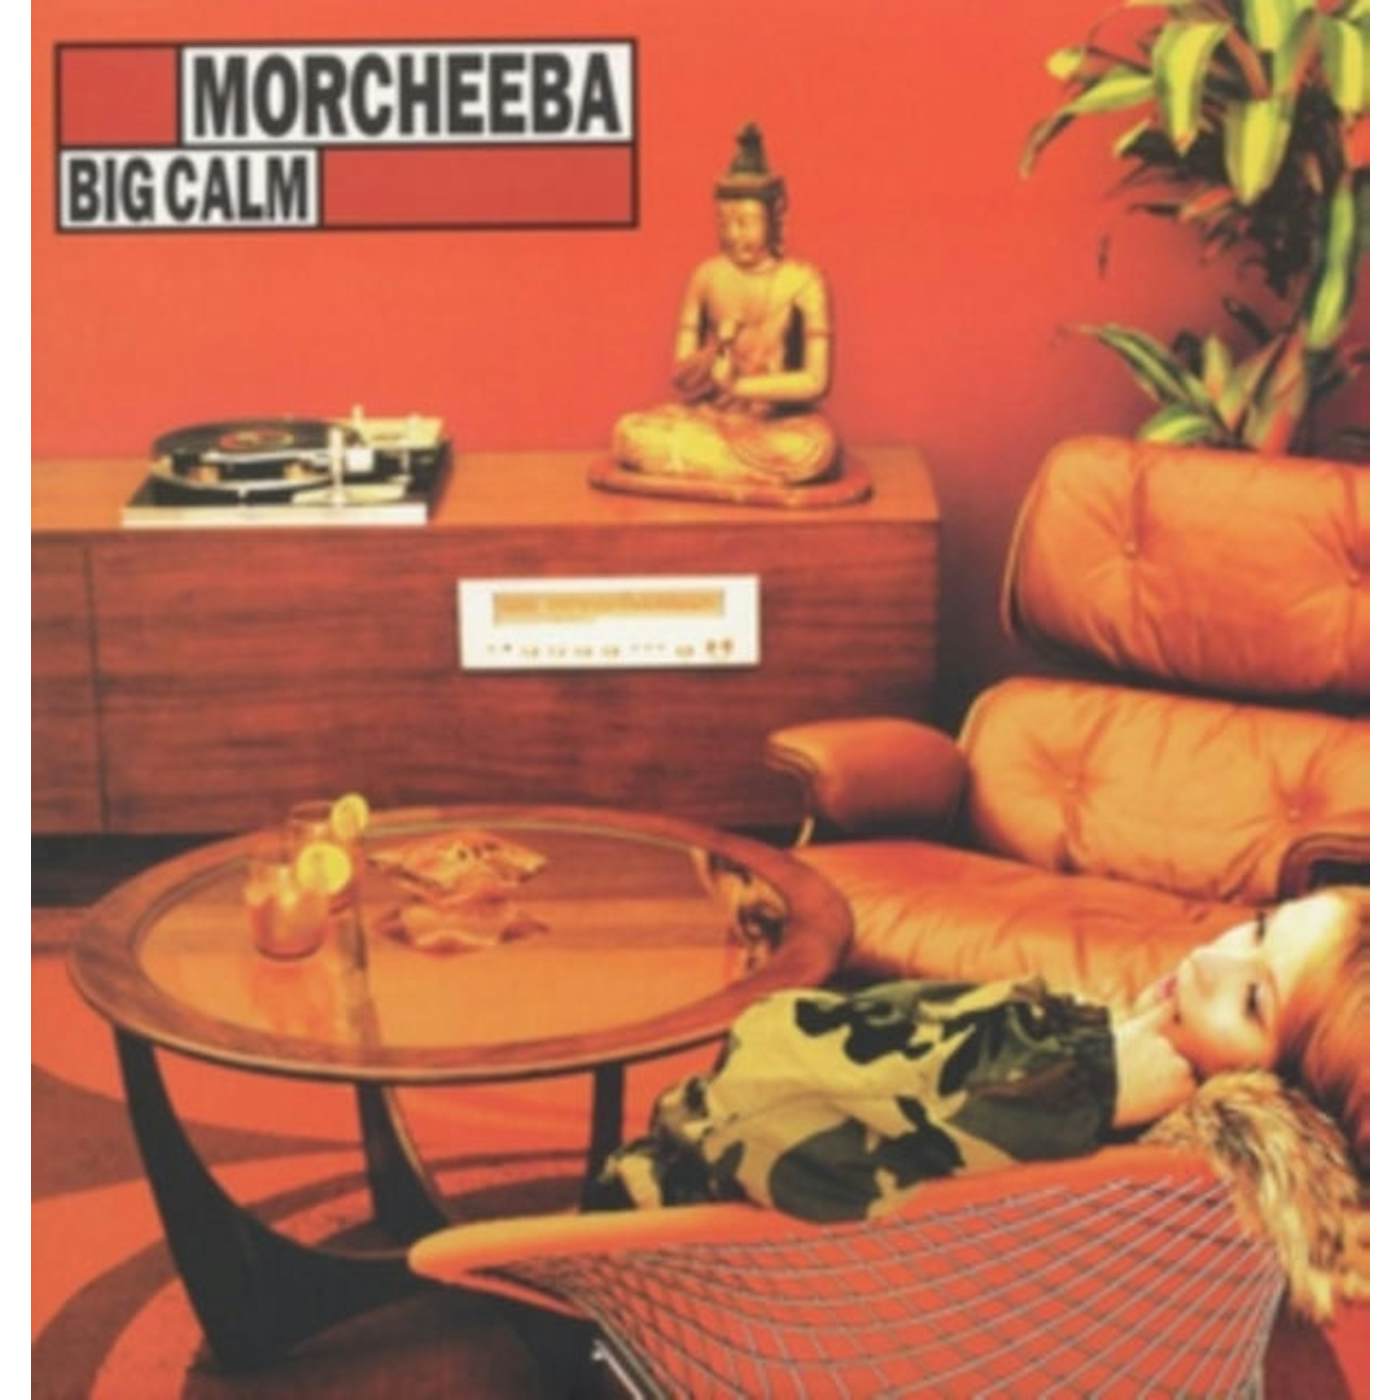 Morcheeba LP Vinyl Record - Big Calm